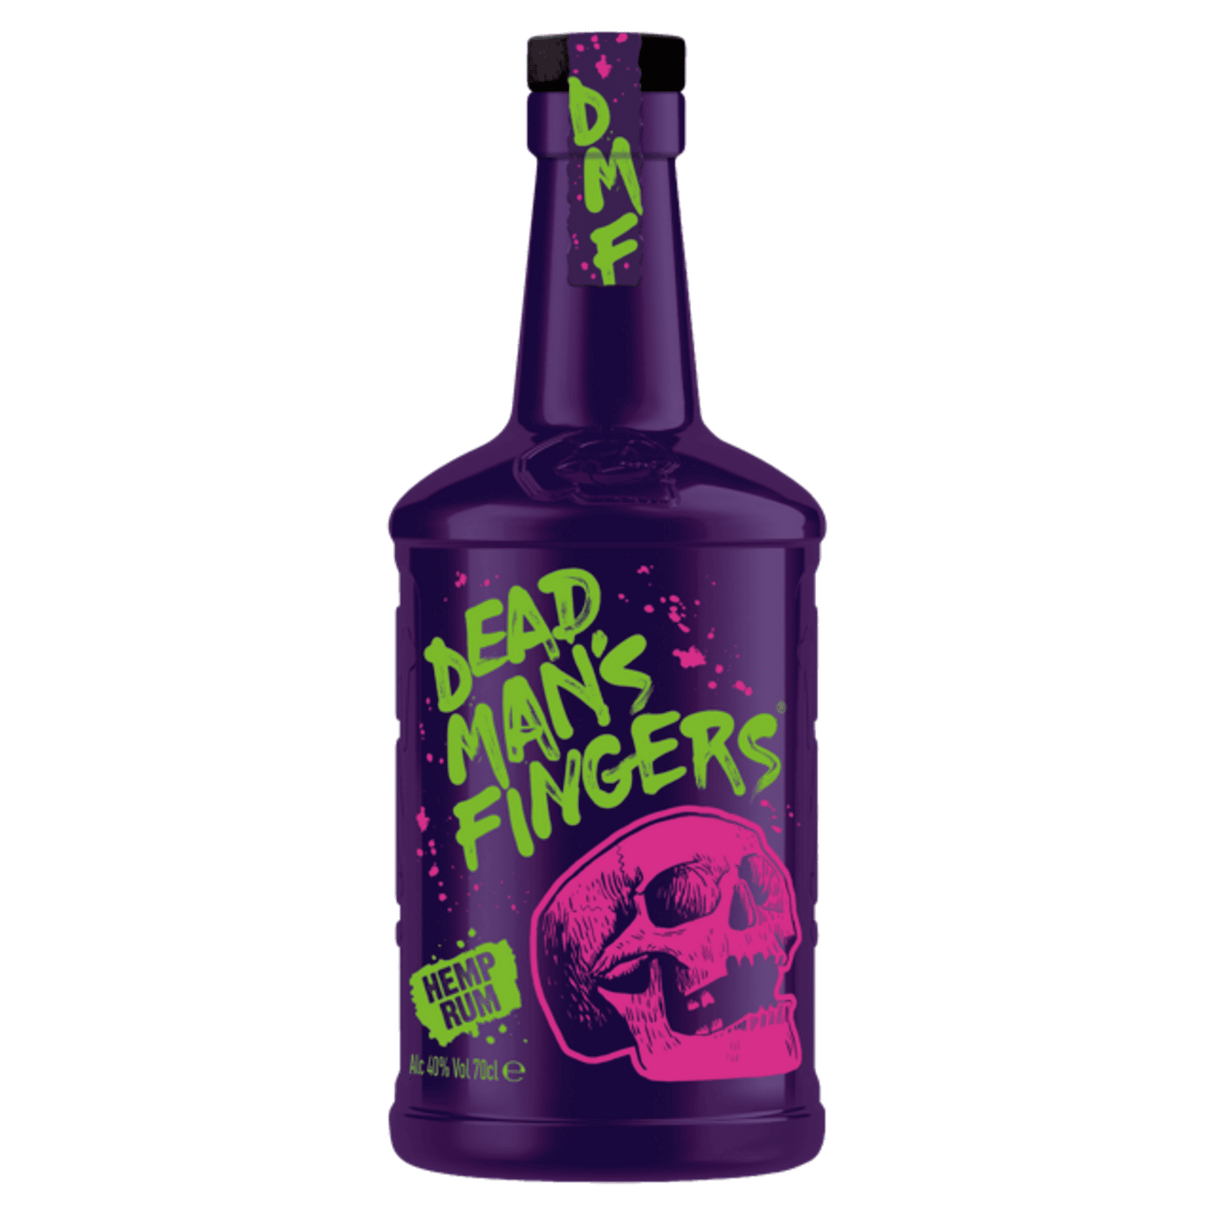 Dead Man's Fingers Hemp Rum 700ml